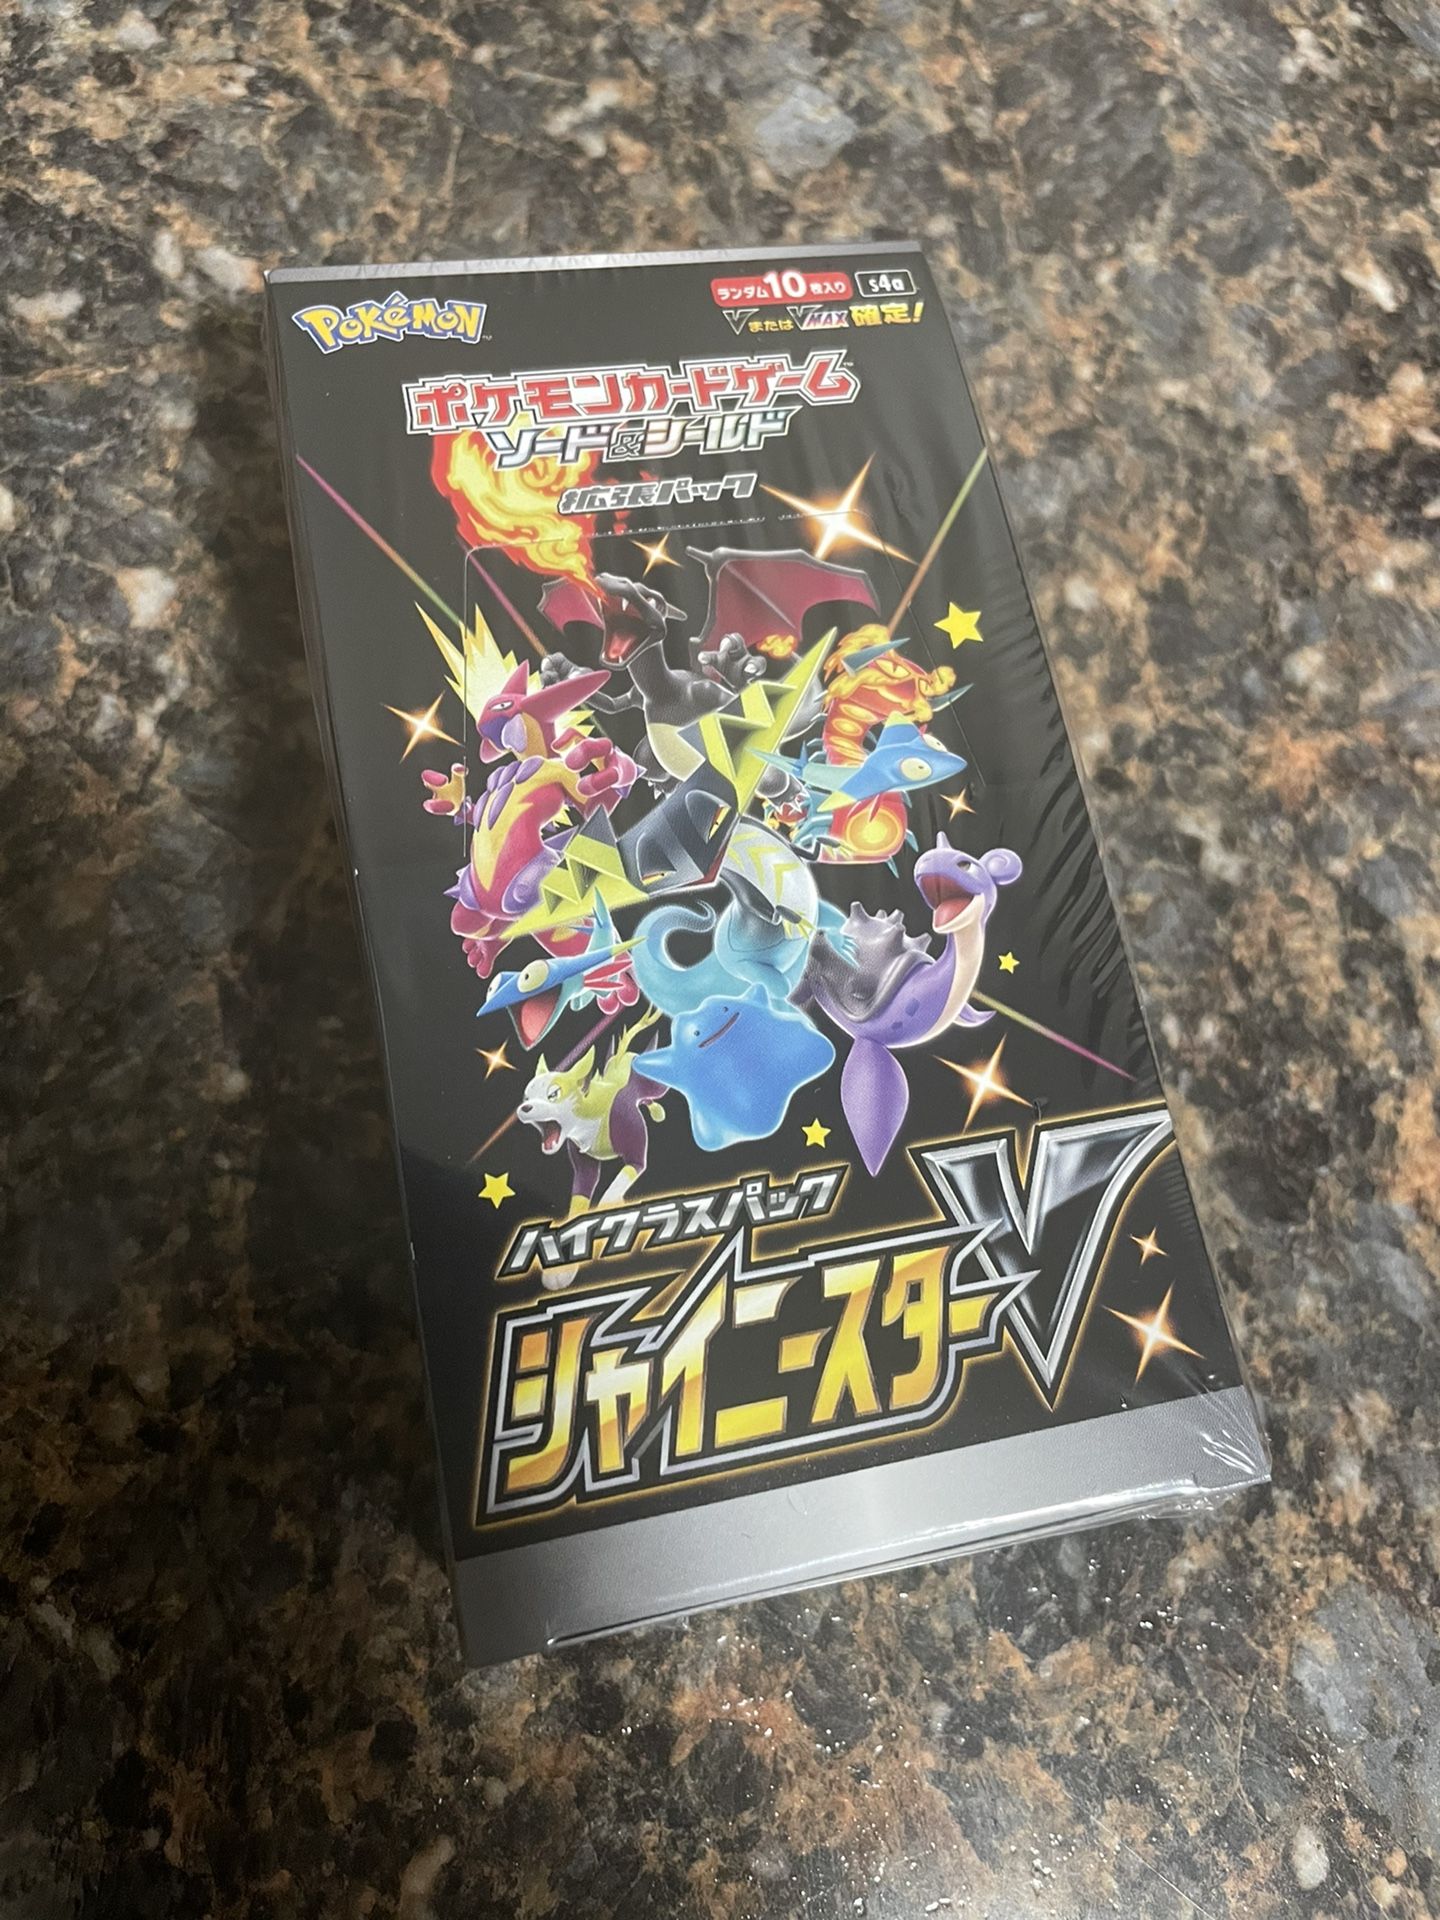 Pokémon Shiny v Booster Box (Japan)